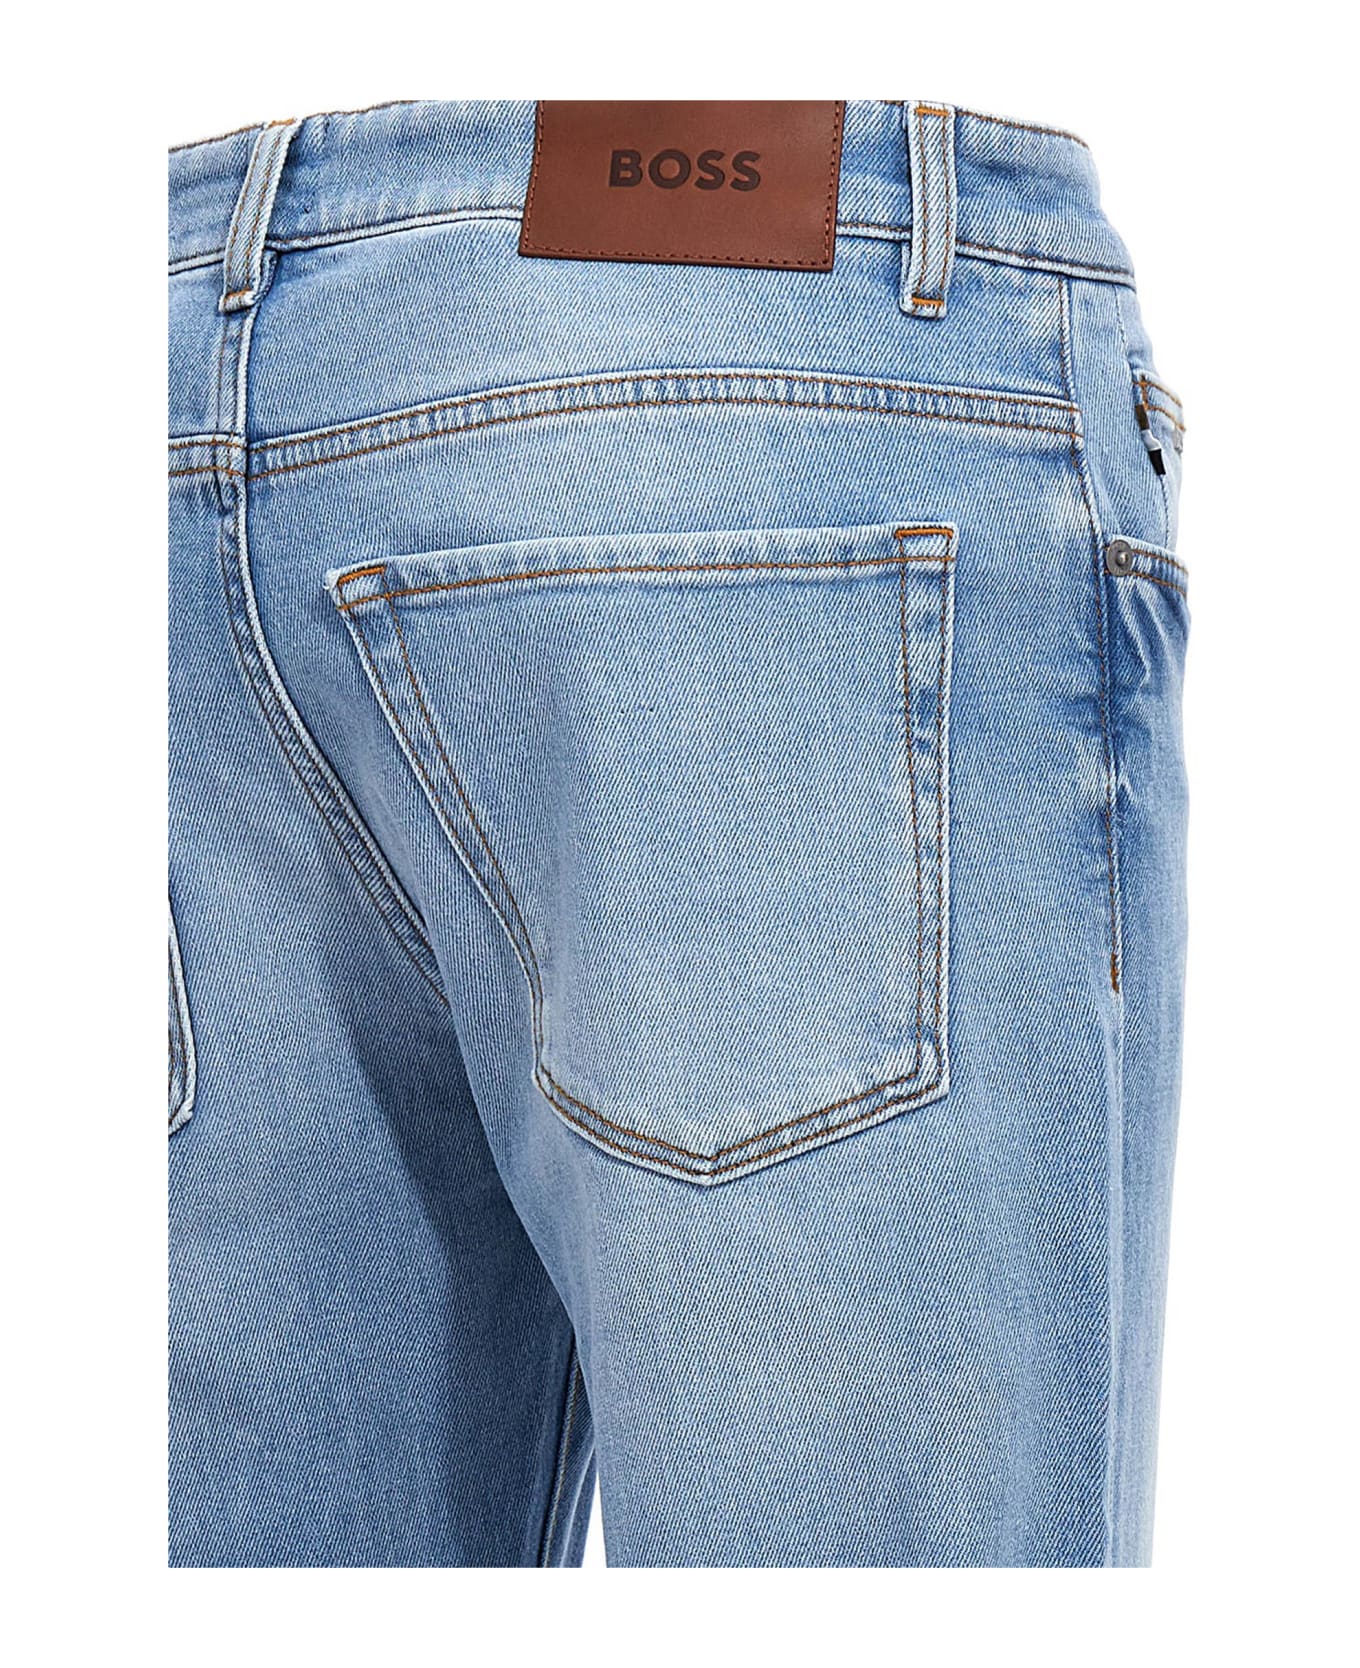 Hugo Boss 'delaware' Jeans - Light Blue